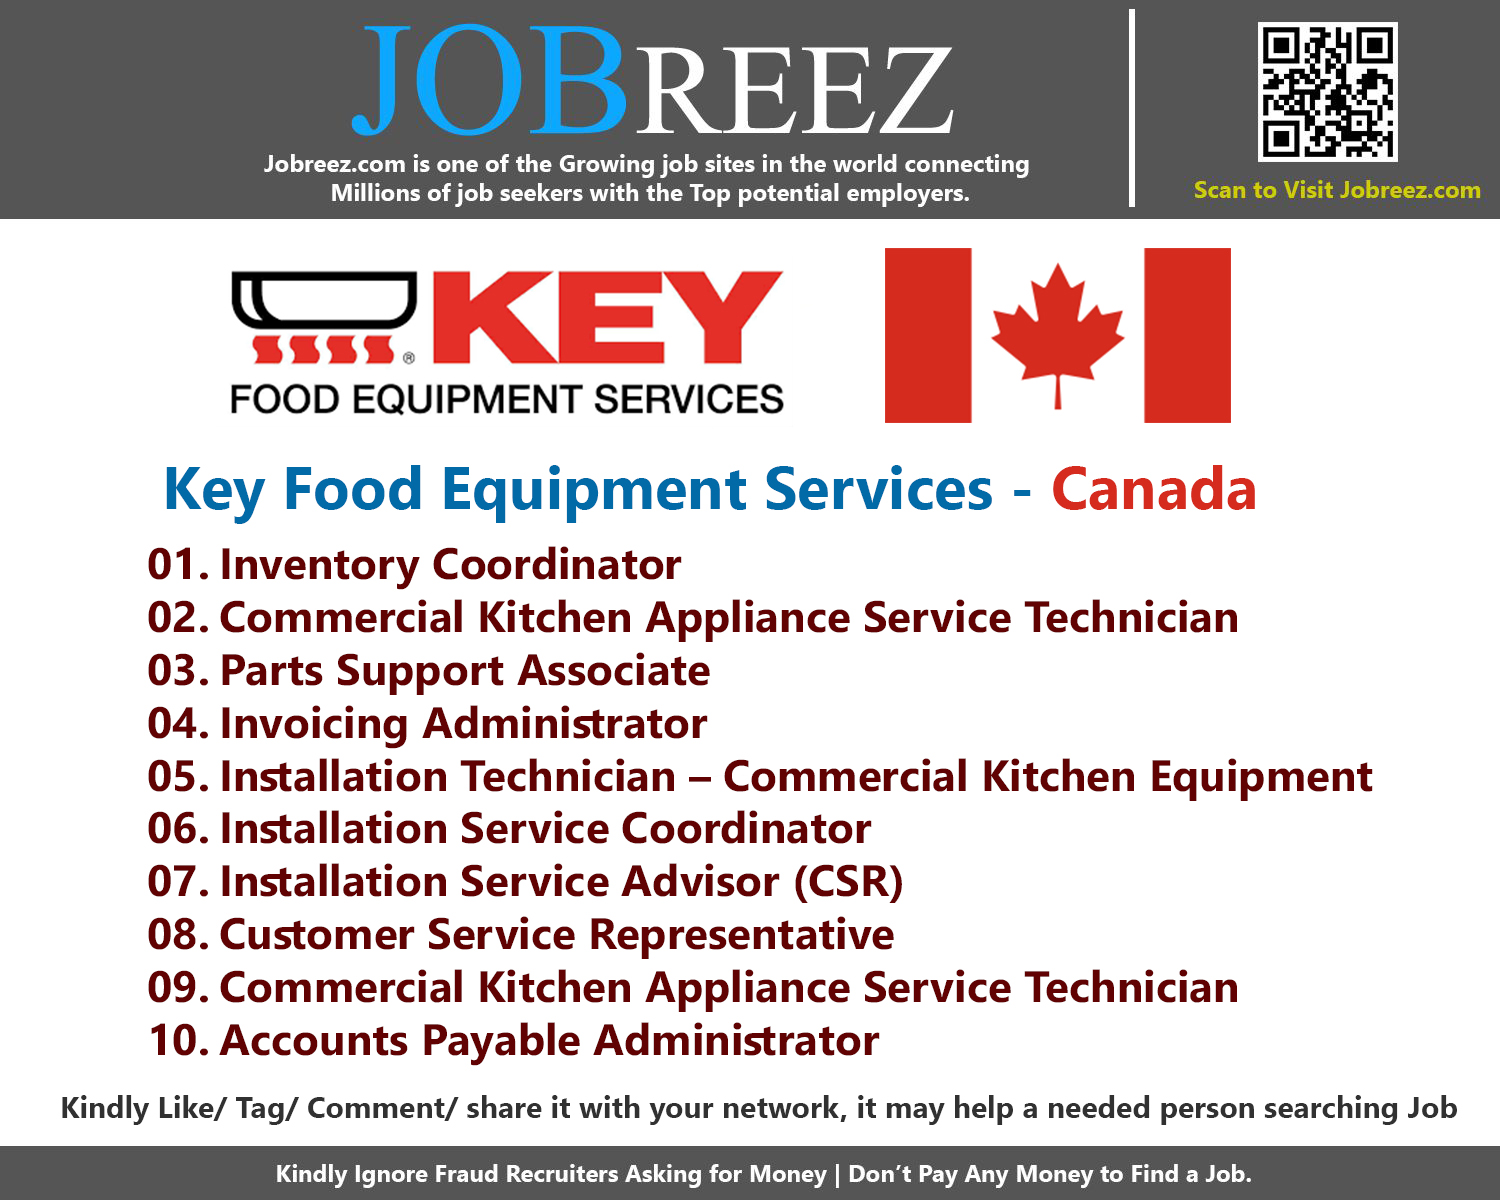 Key Food Equipment Services Job Vacancies - Canada